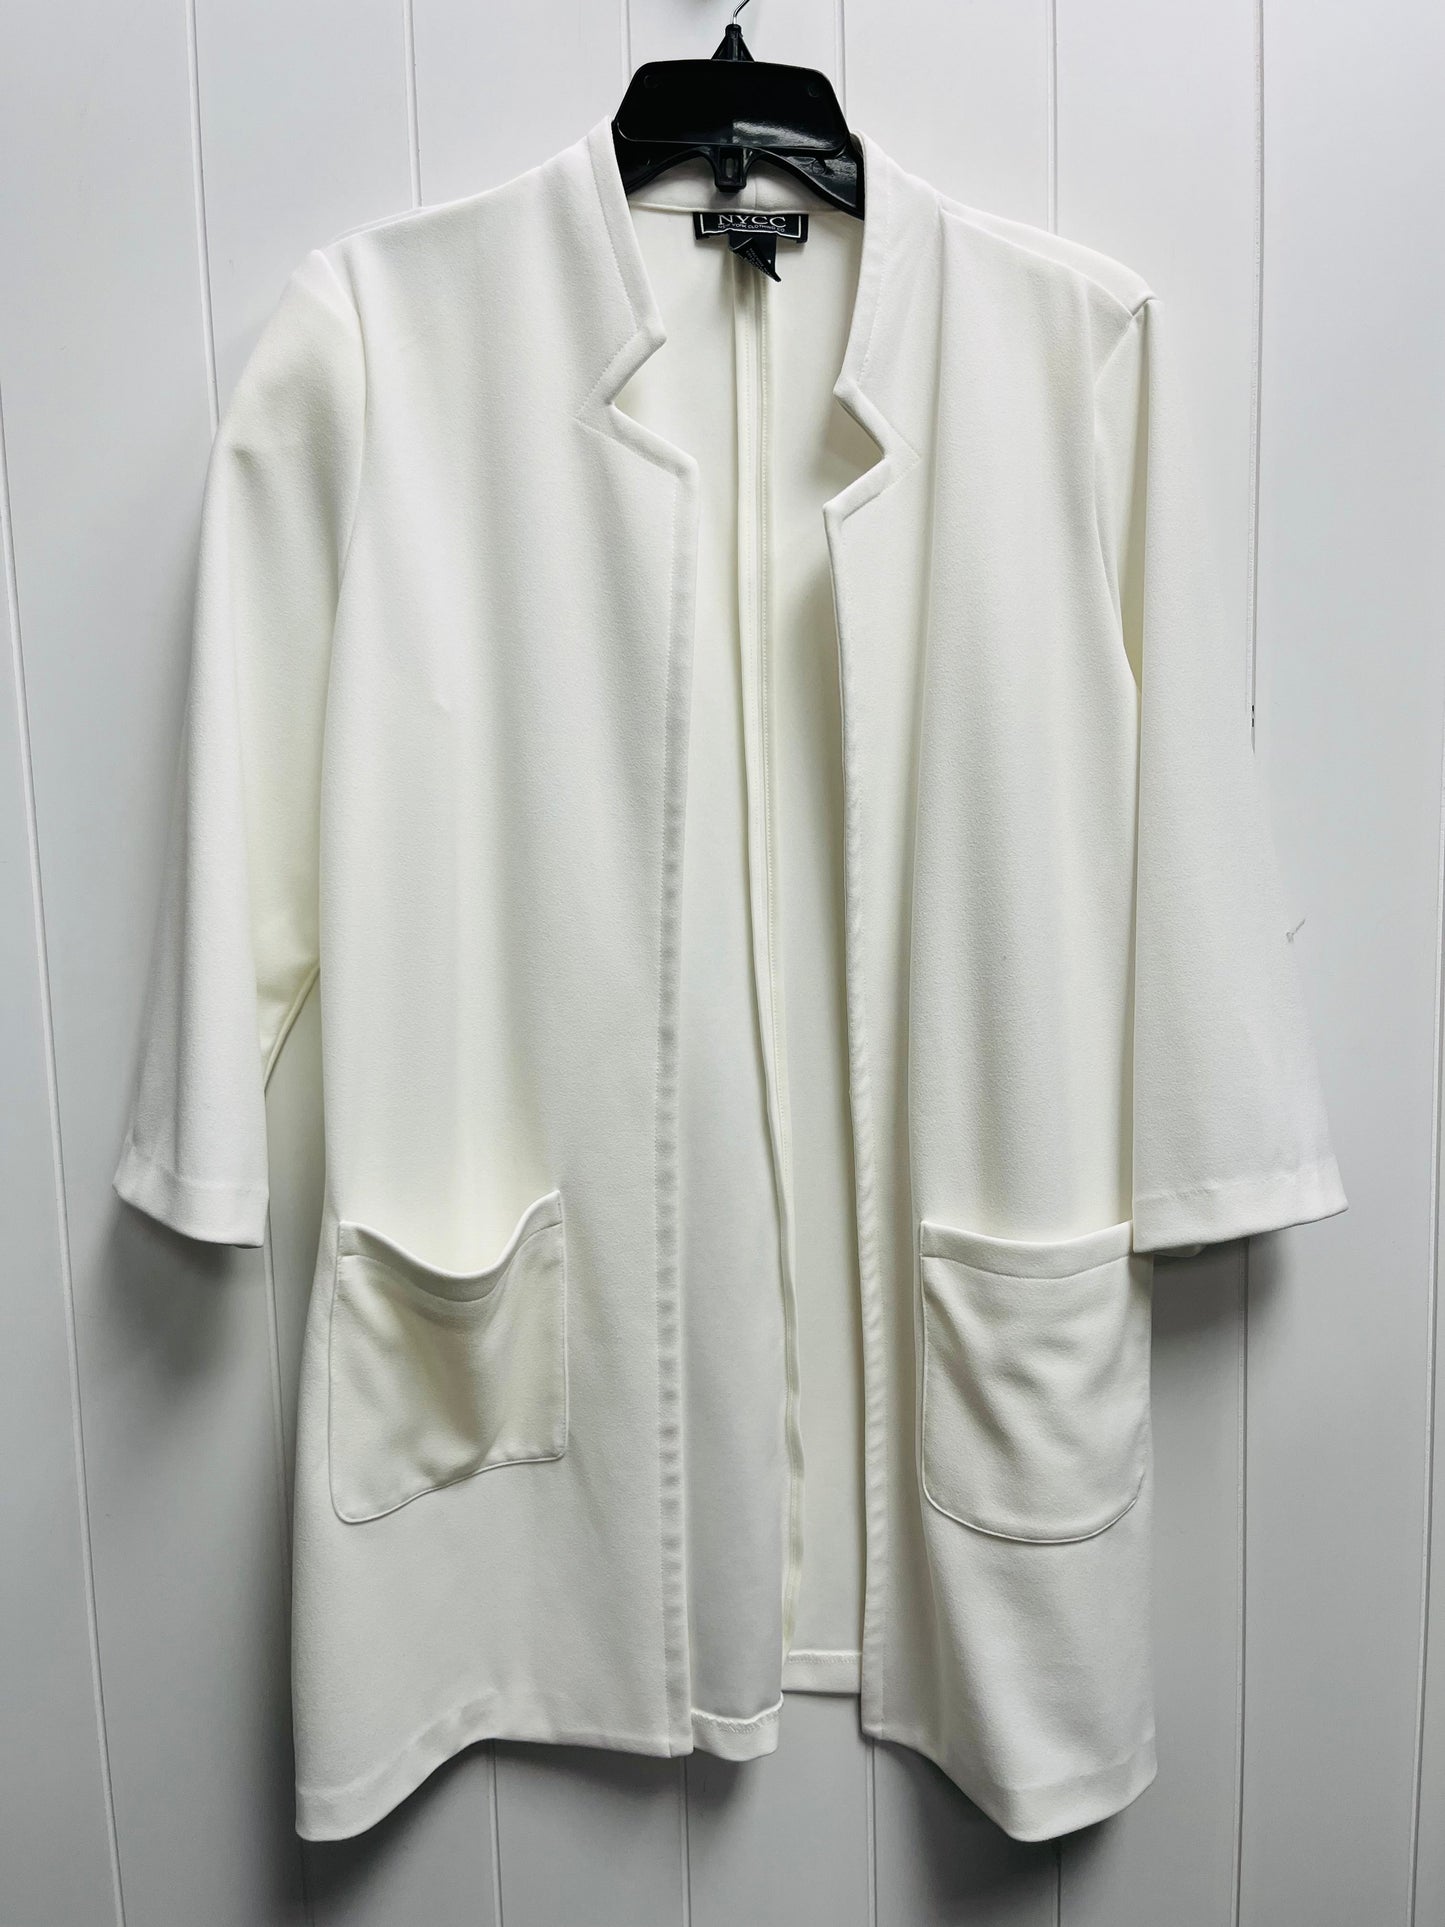 White Blazer NEW YORK CLOTHING COMPANY, Size L